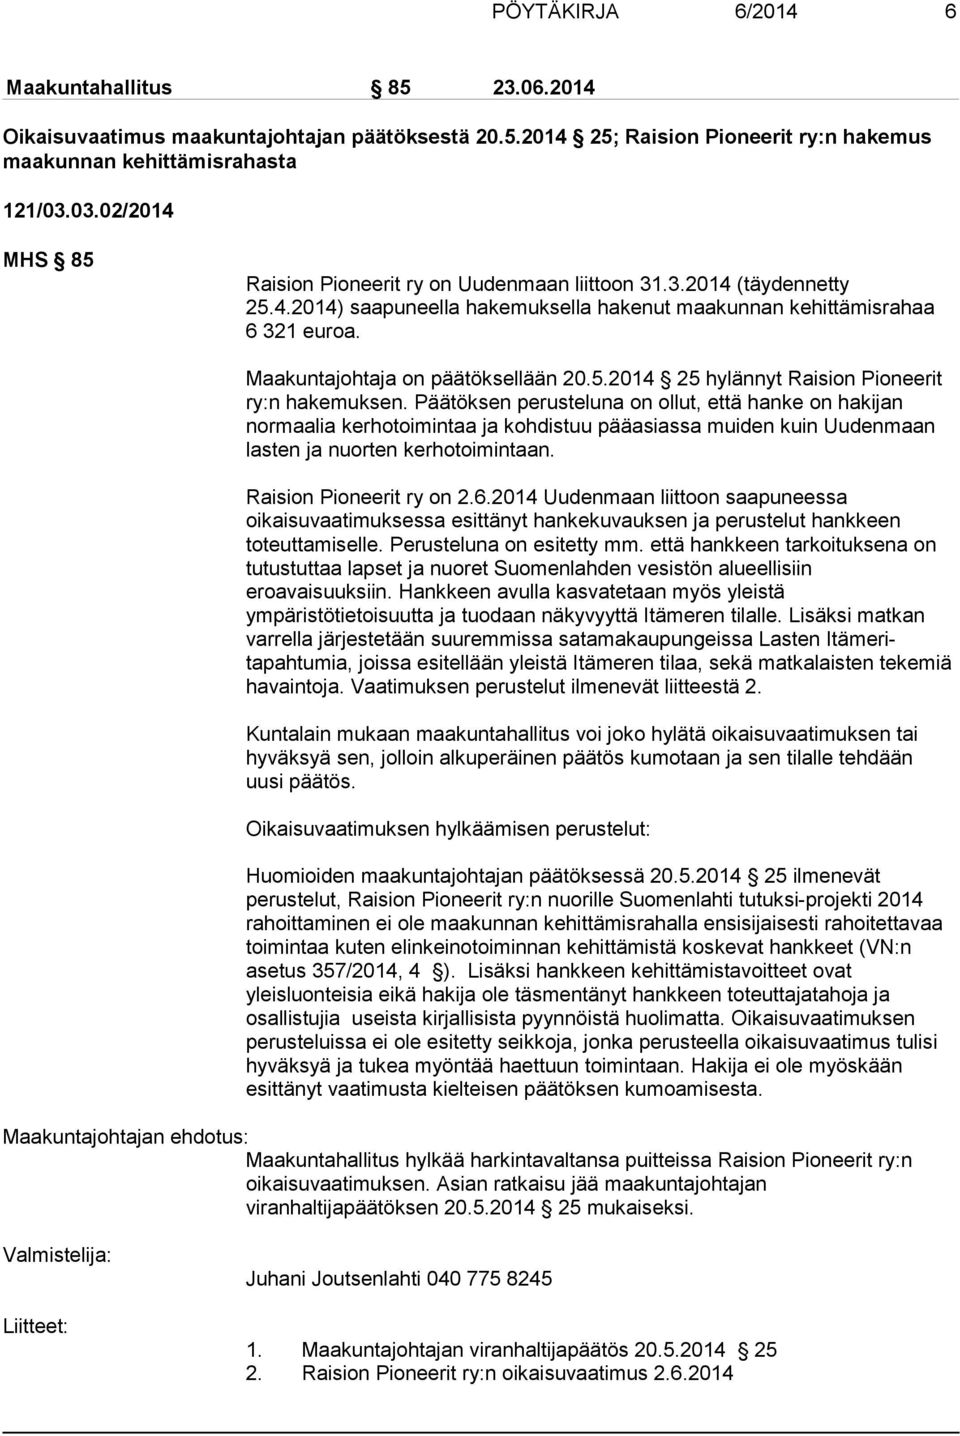 Maakuntajohtaja on päätöksellään 20.5.2014 25 hylännyt Raision Pioneerit ry:n hakemuksen.